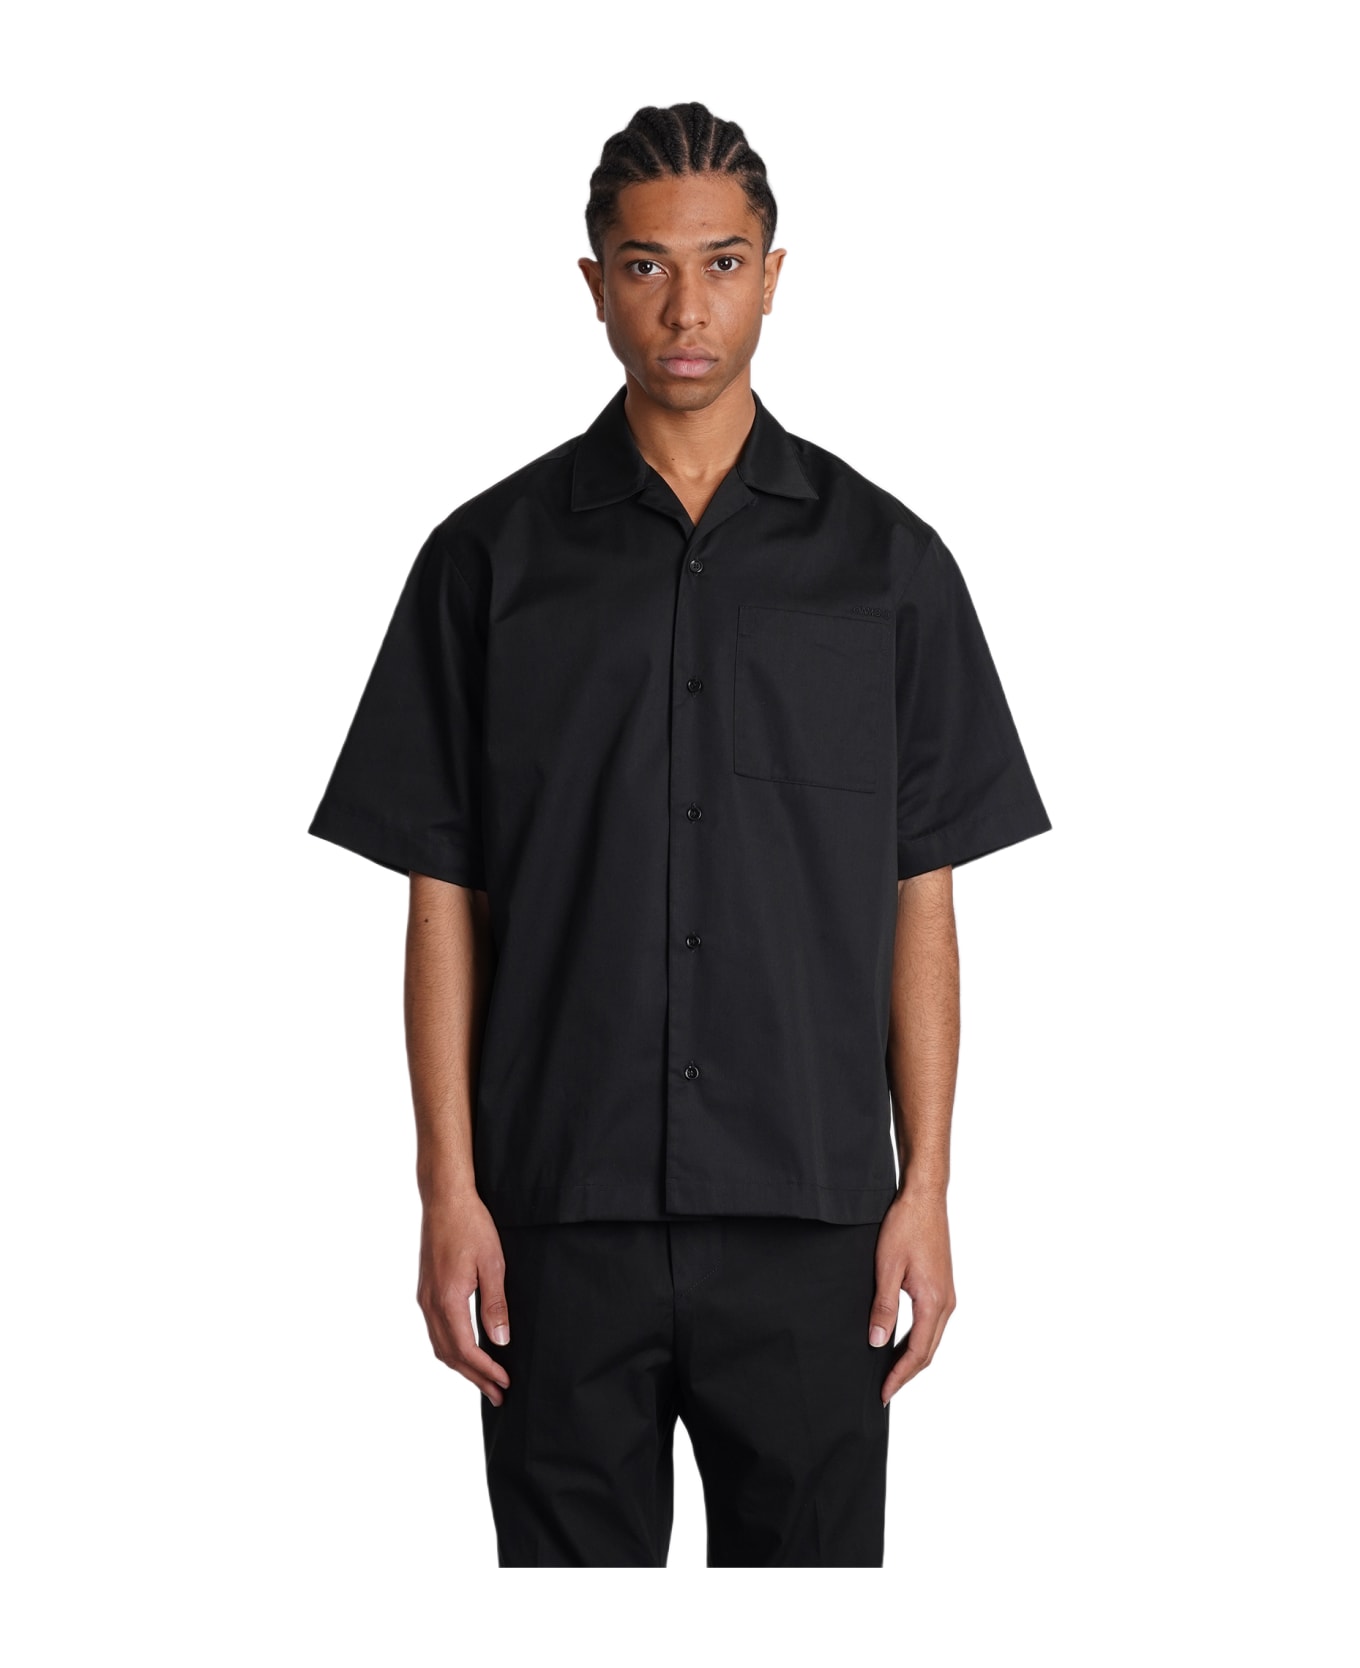 OAMC Shirt In Black Polyester - black